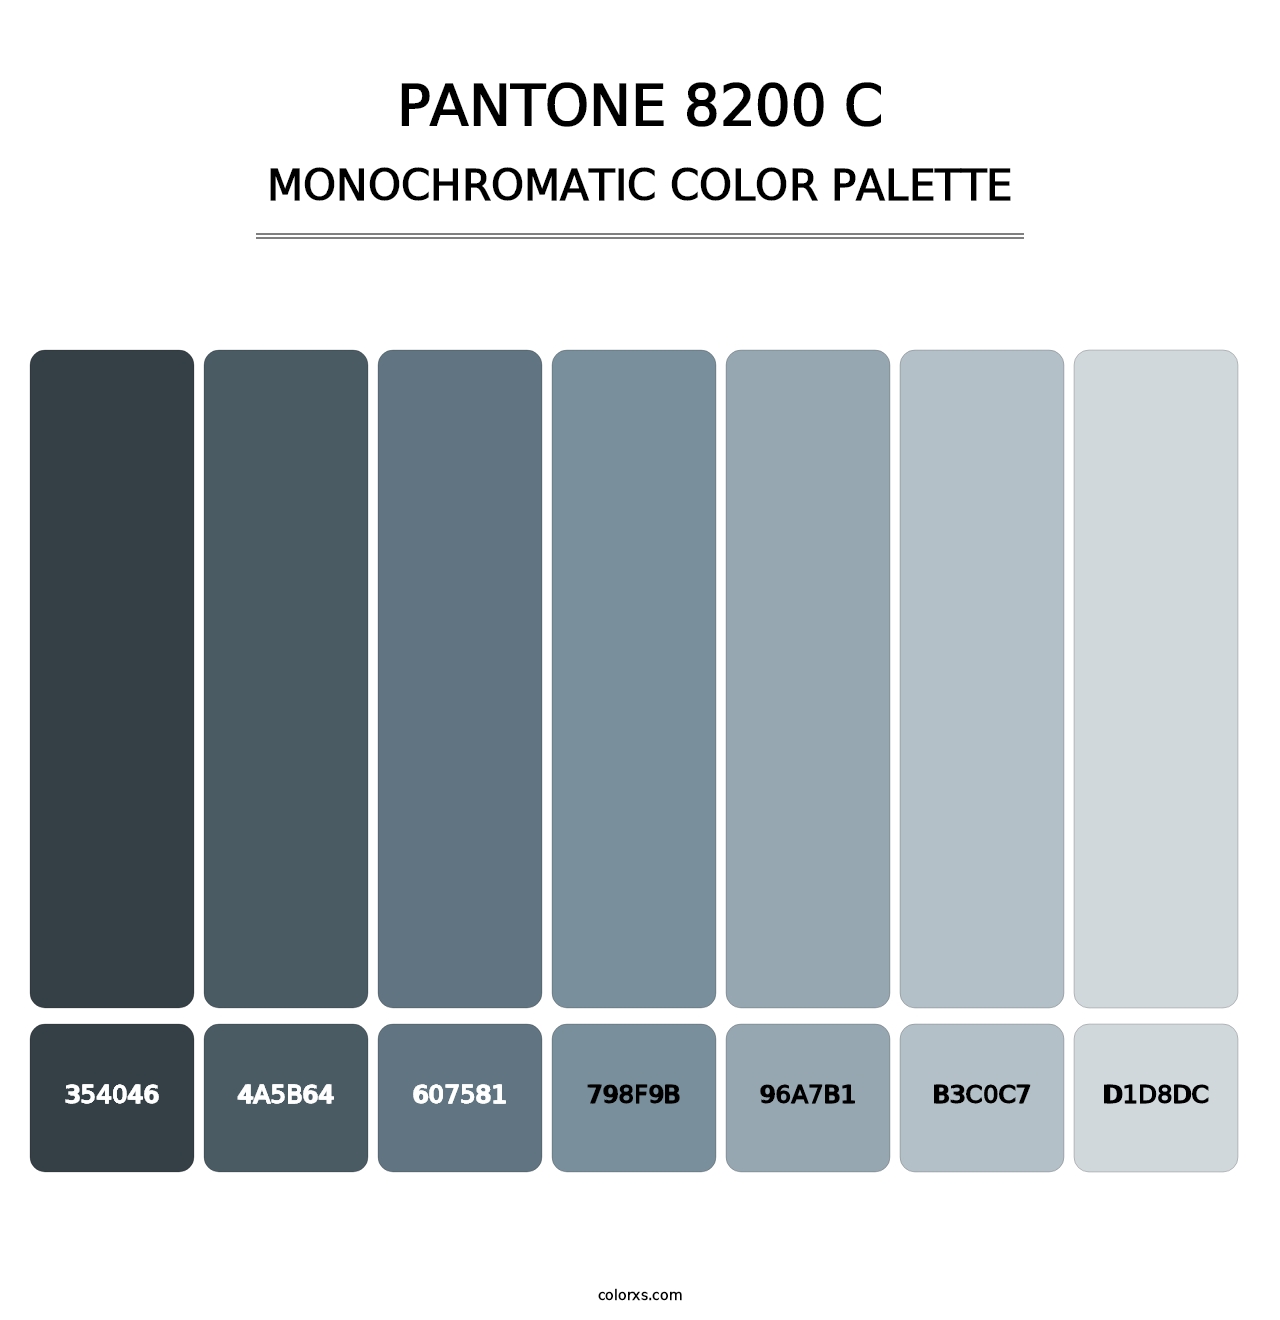 PANTONE 8200 C - Monochromatic Color Palette